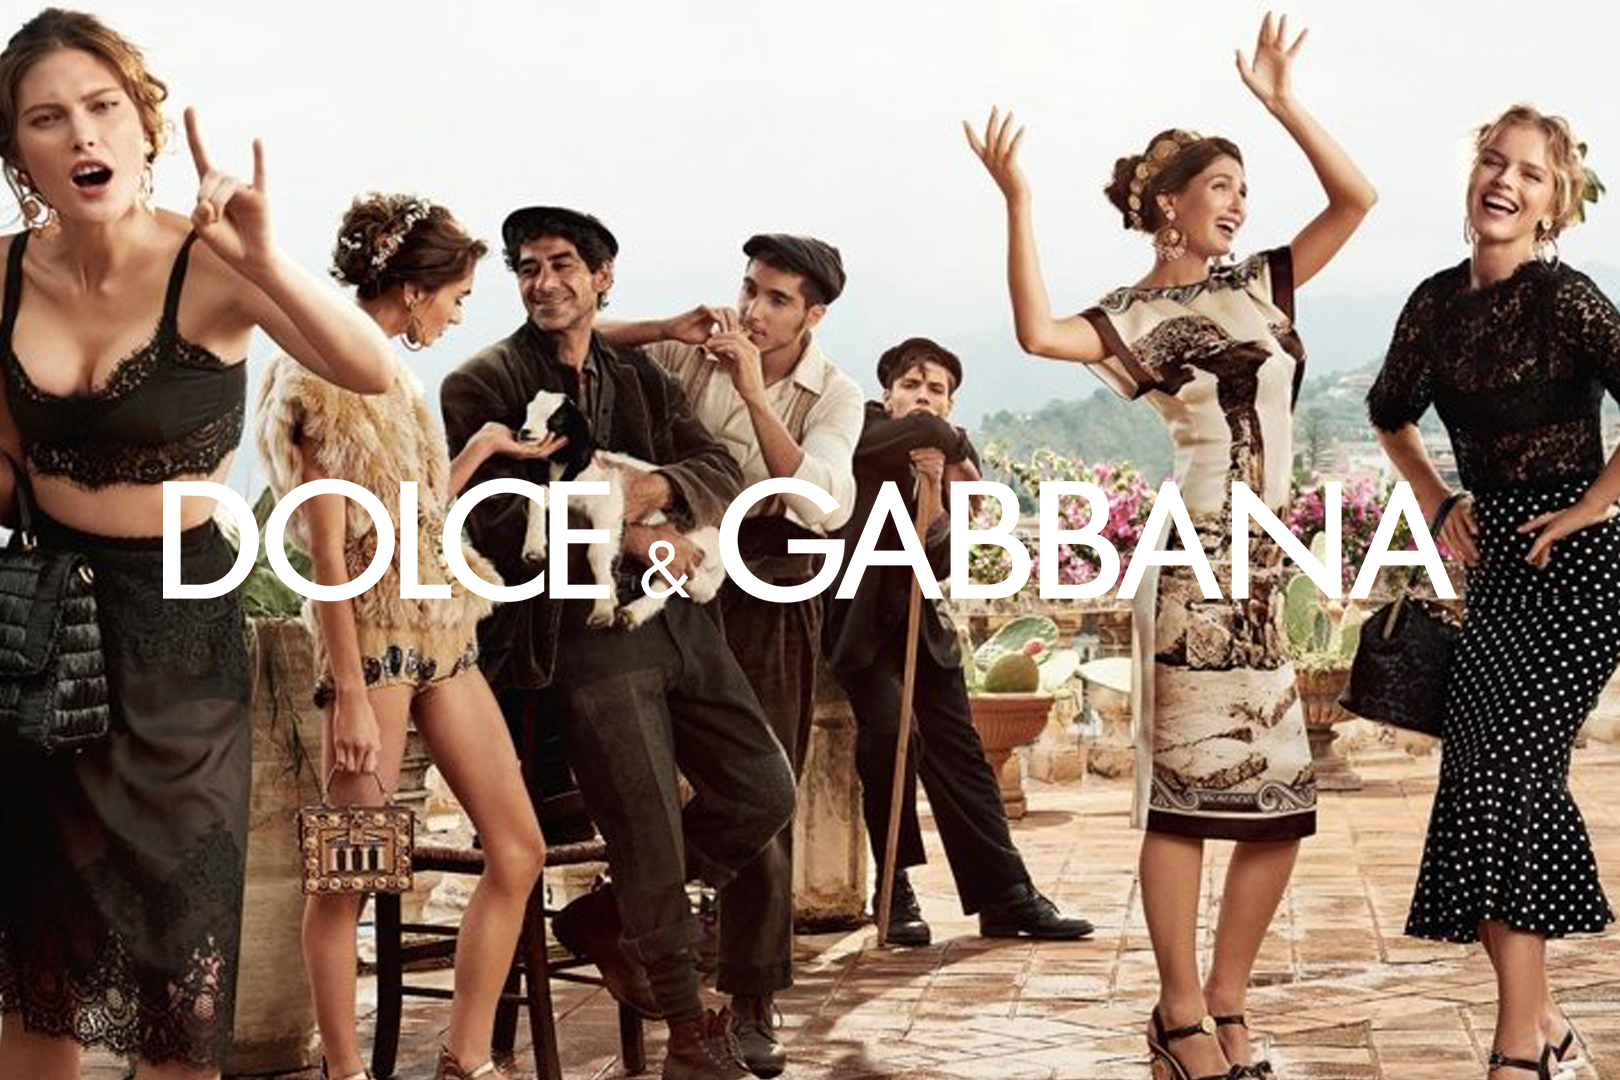 Dolce & Gabbana – The EDDY Company